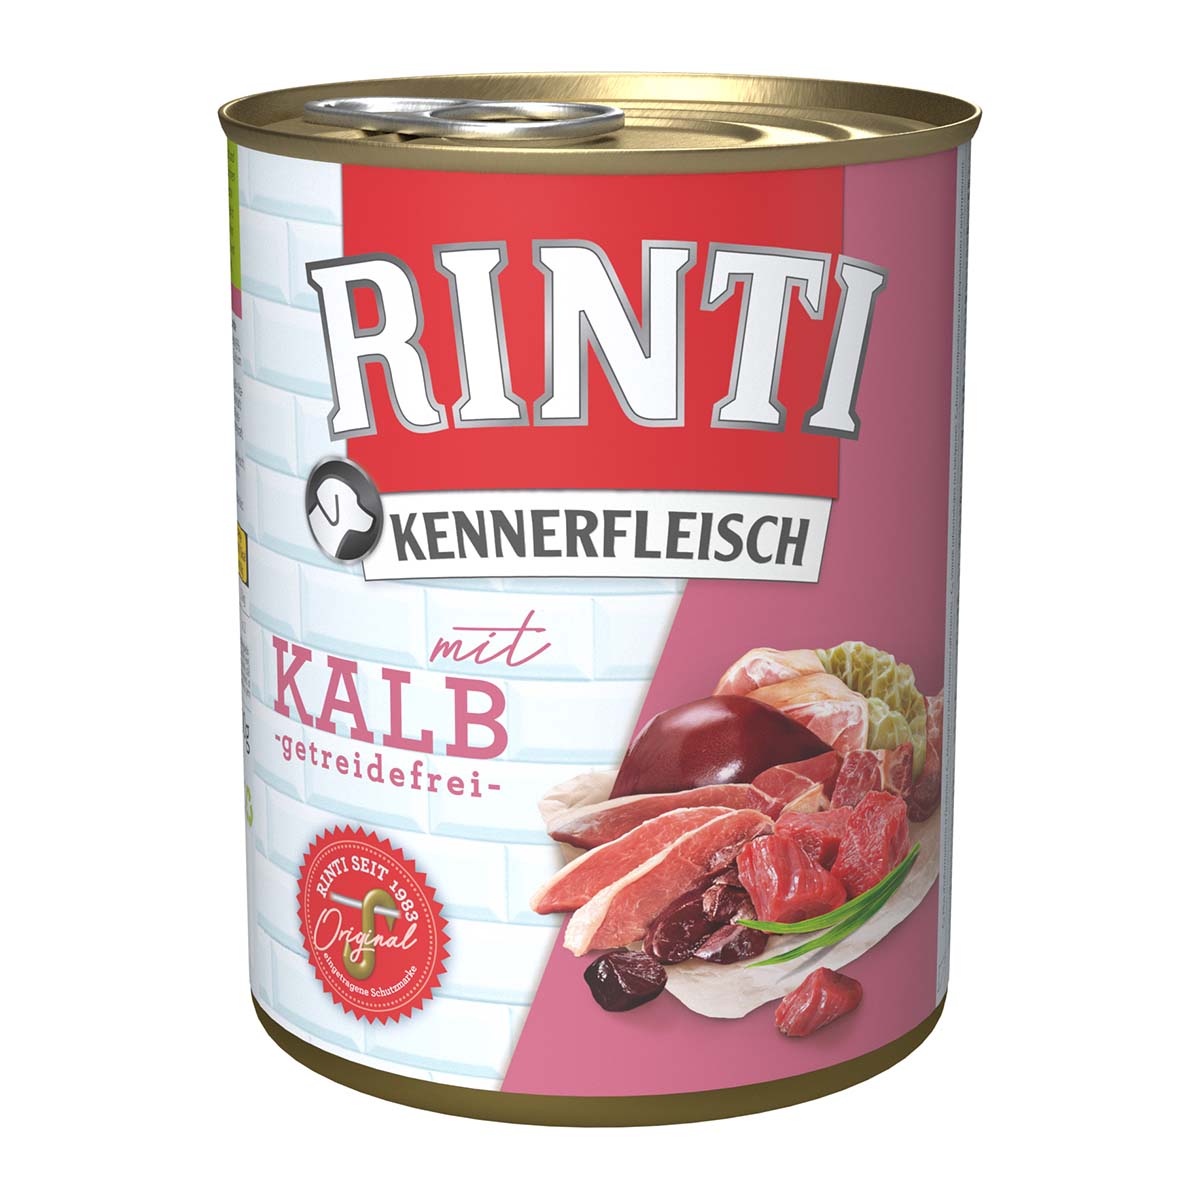 Rinti Kennerfleisch mit Kalb 12x800g